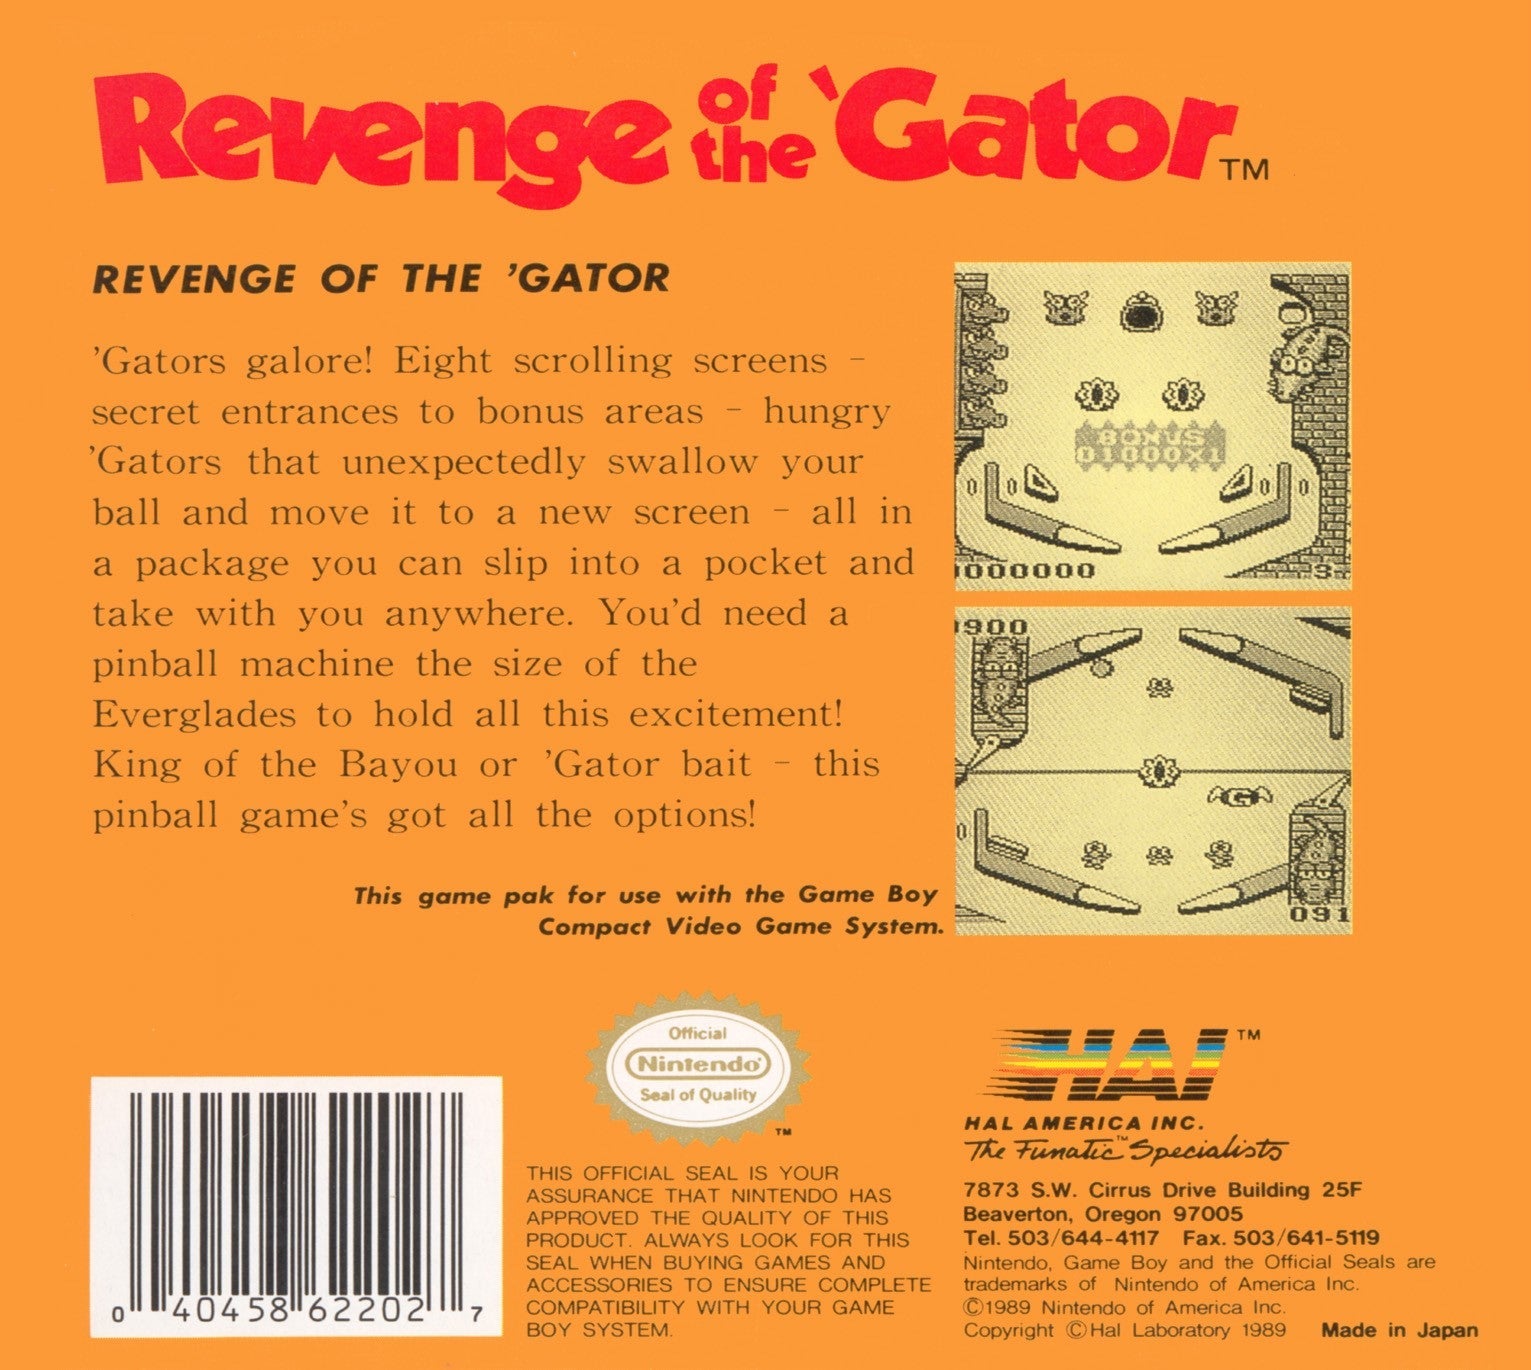 Revenge of The Gator